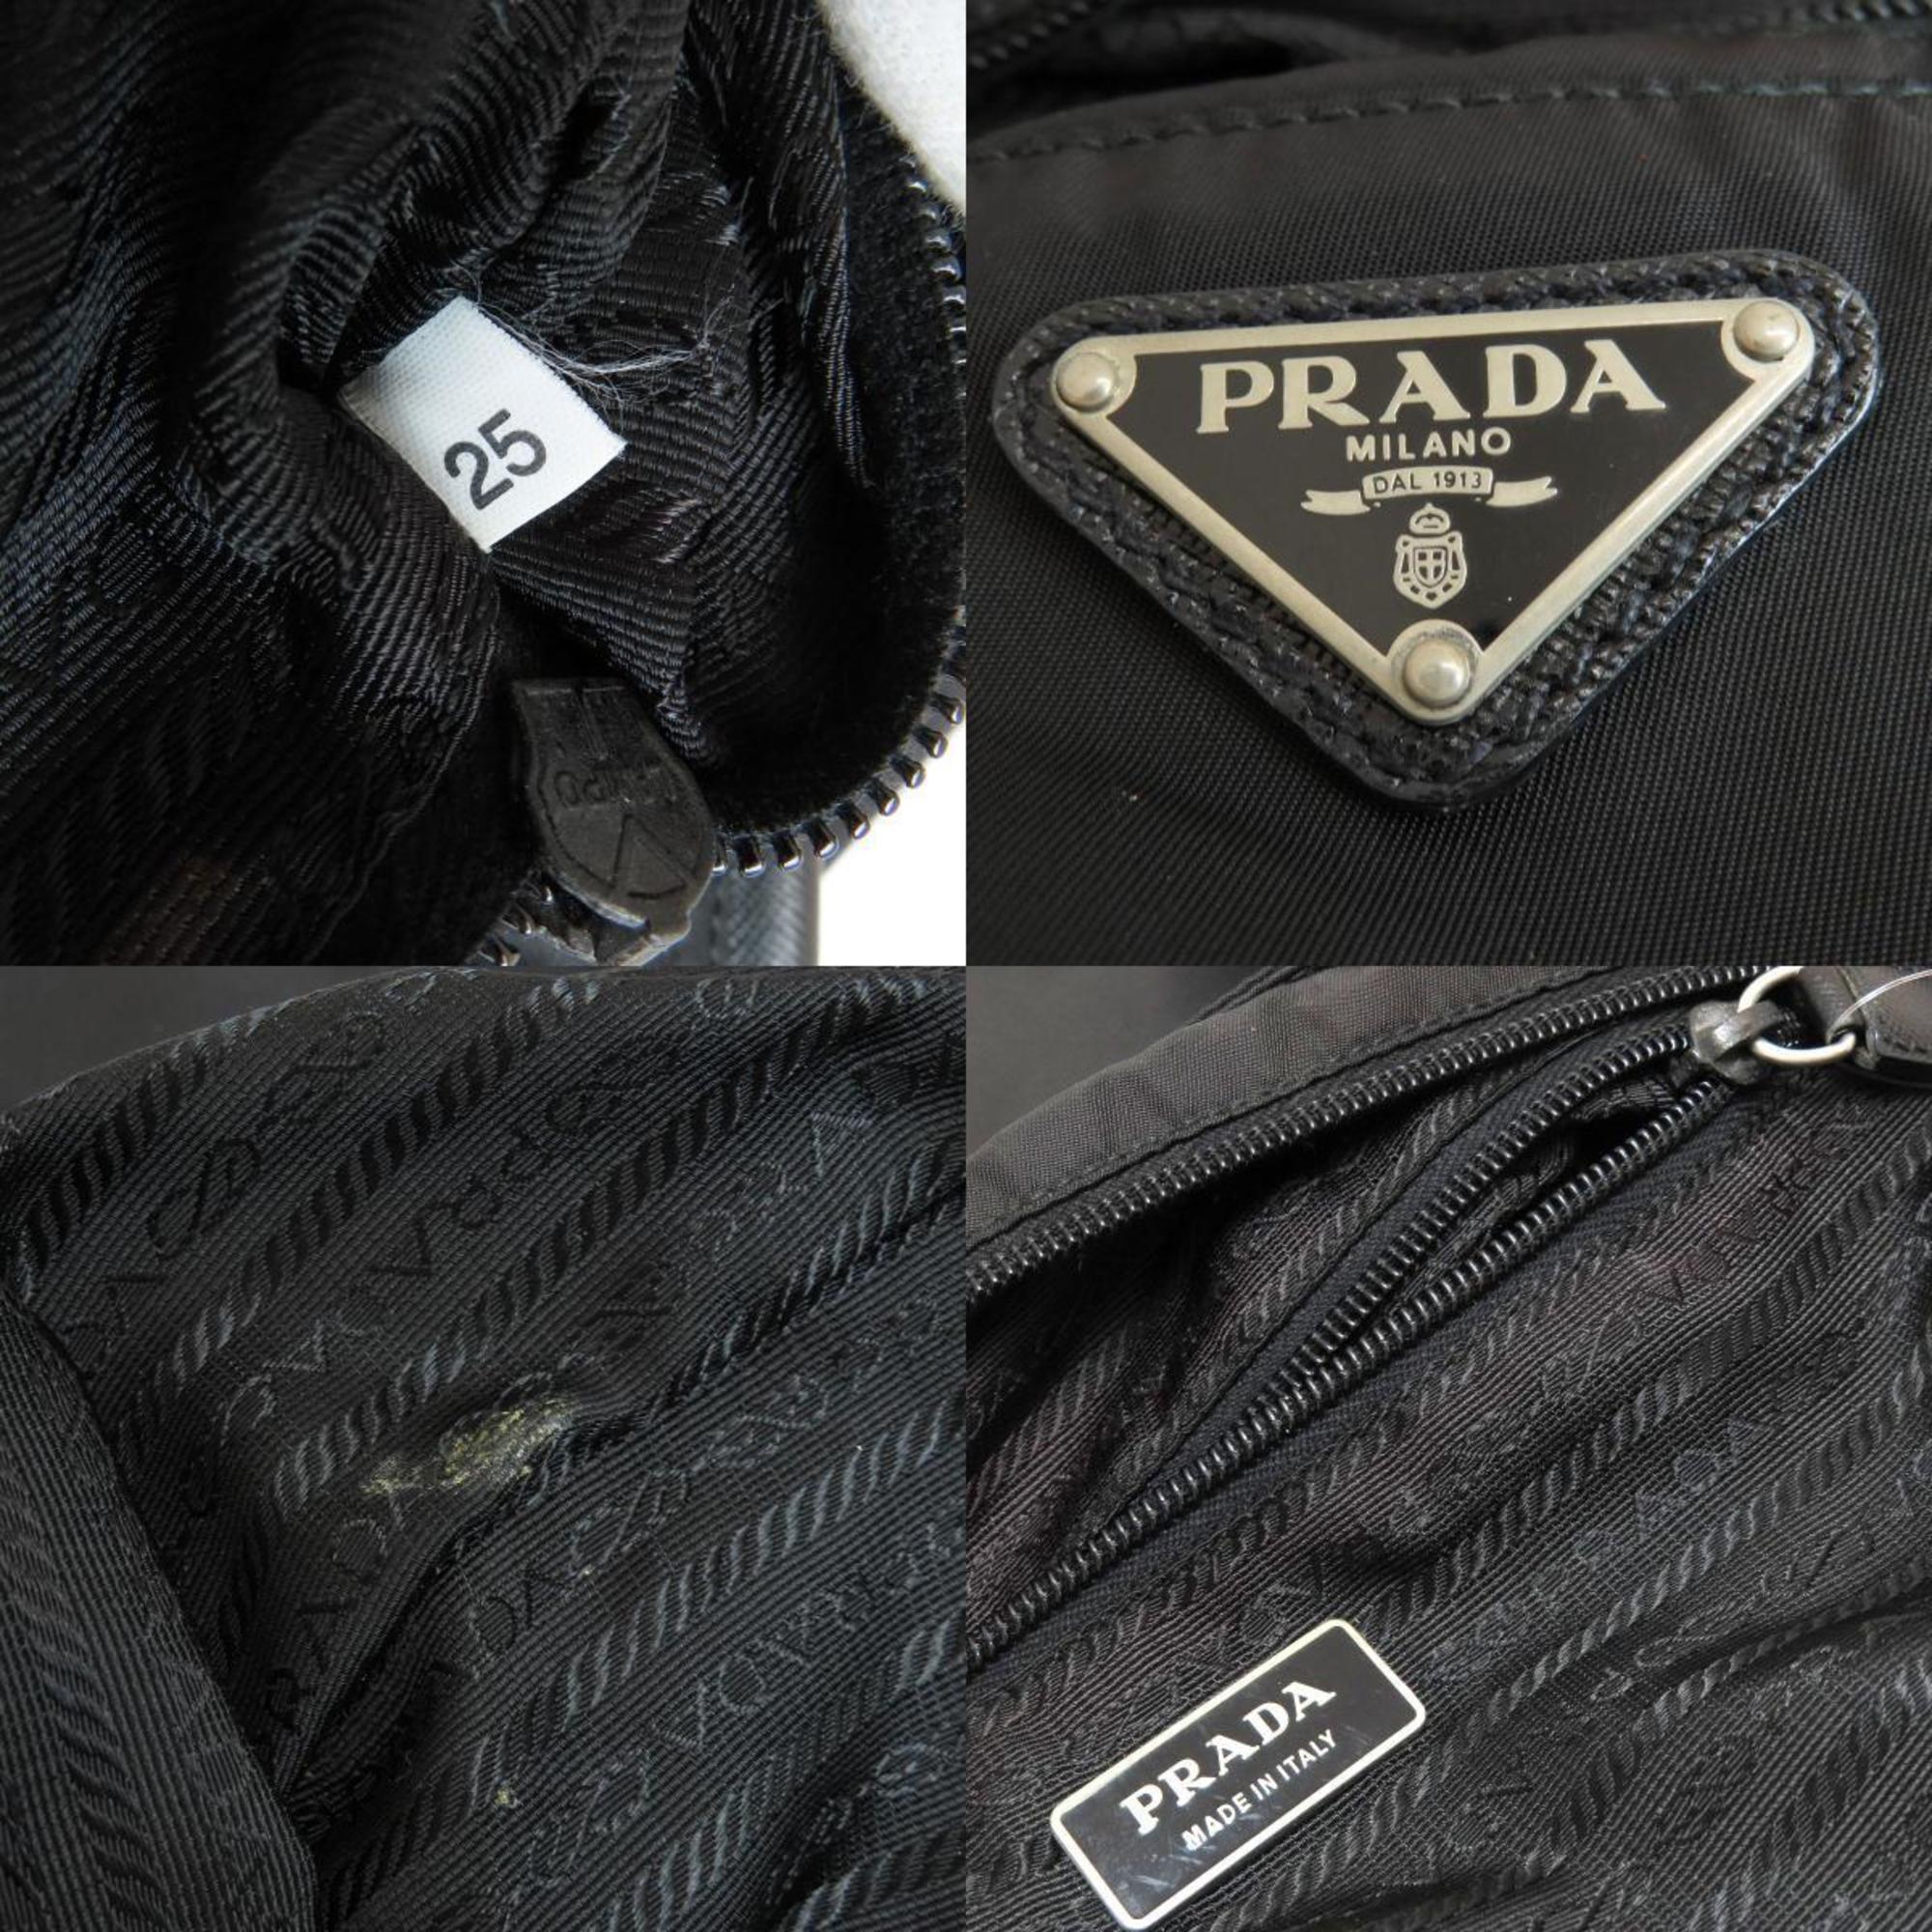 Prada VA0340 Metalwork Shoulder Bag Nylon Material Women's